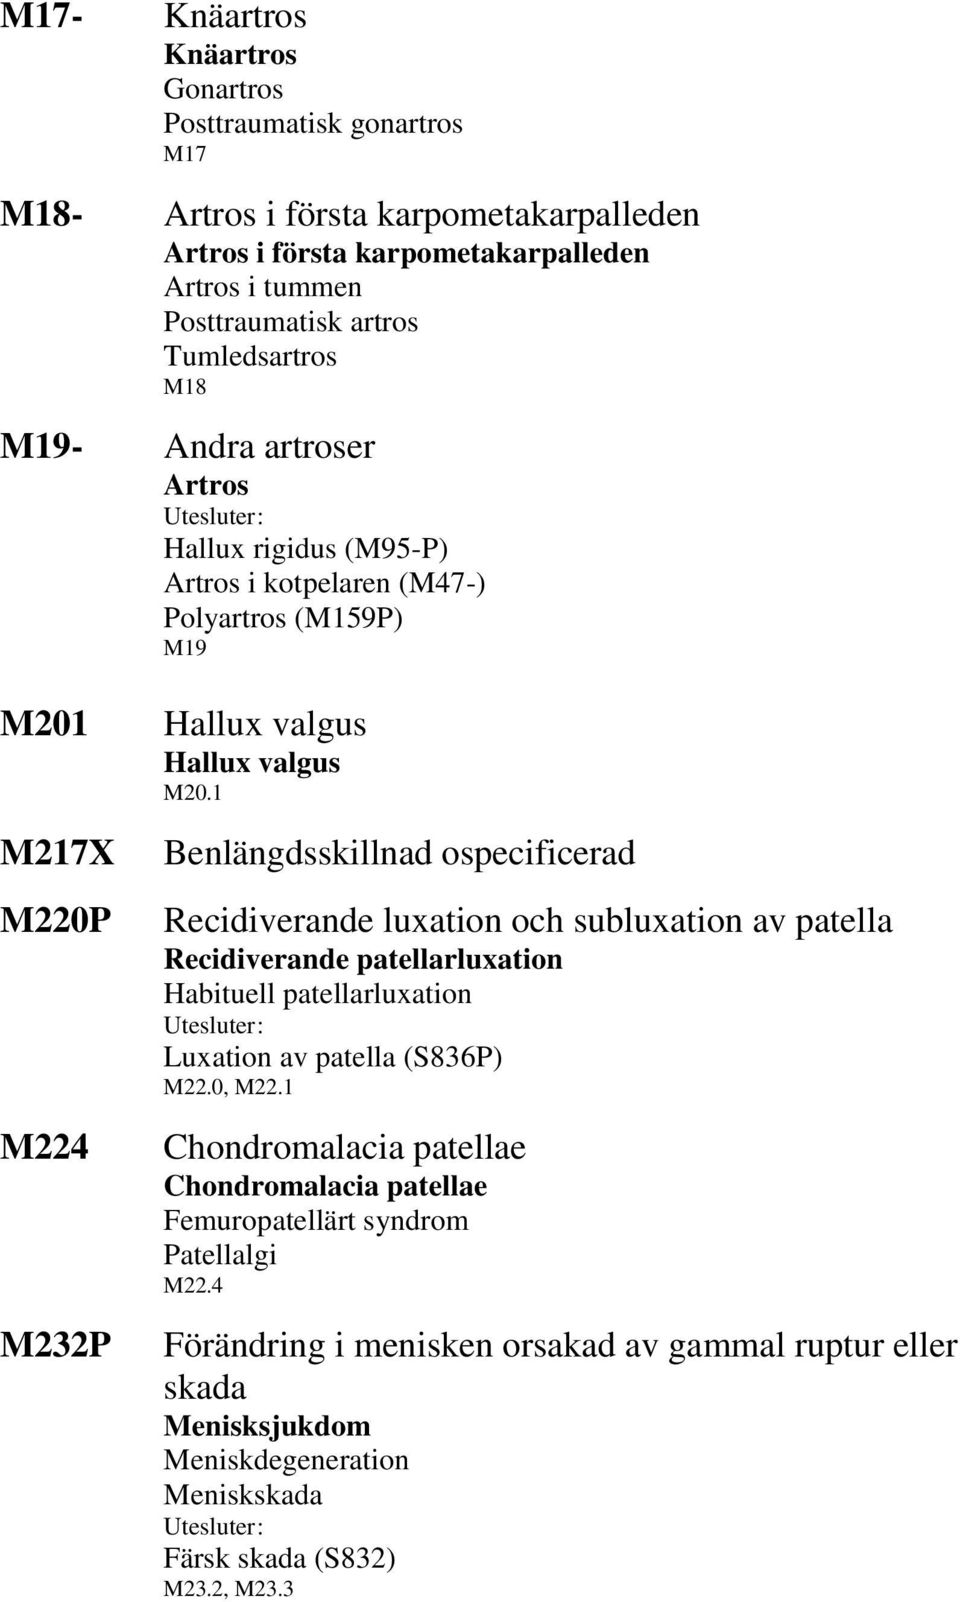 1 Benlängdsskillnad ospecificerad Recidiverande luxation och subluxation av patella Recidiverande patellarluxation Habituell patellarluxation Luxation av patella (S836P) M22.0, M22.